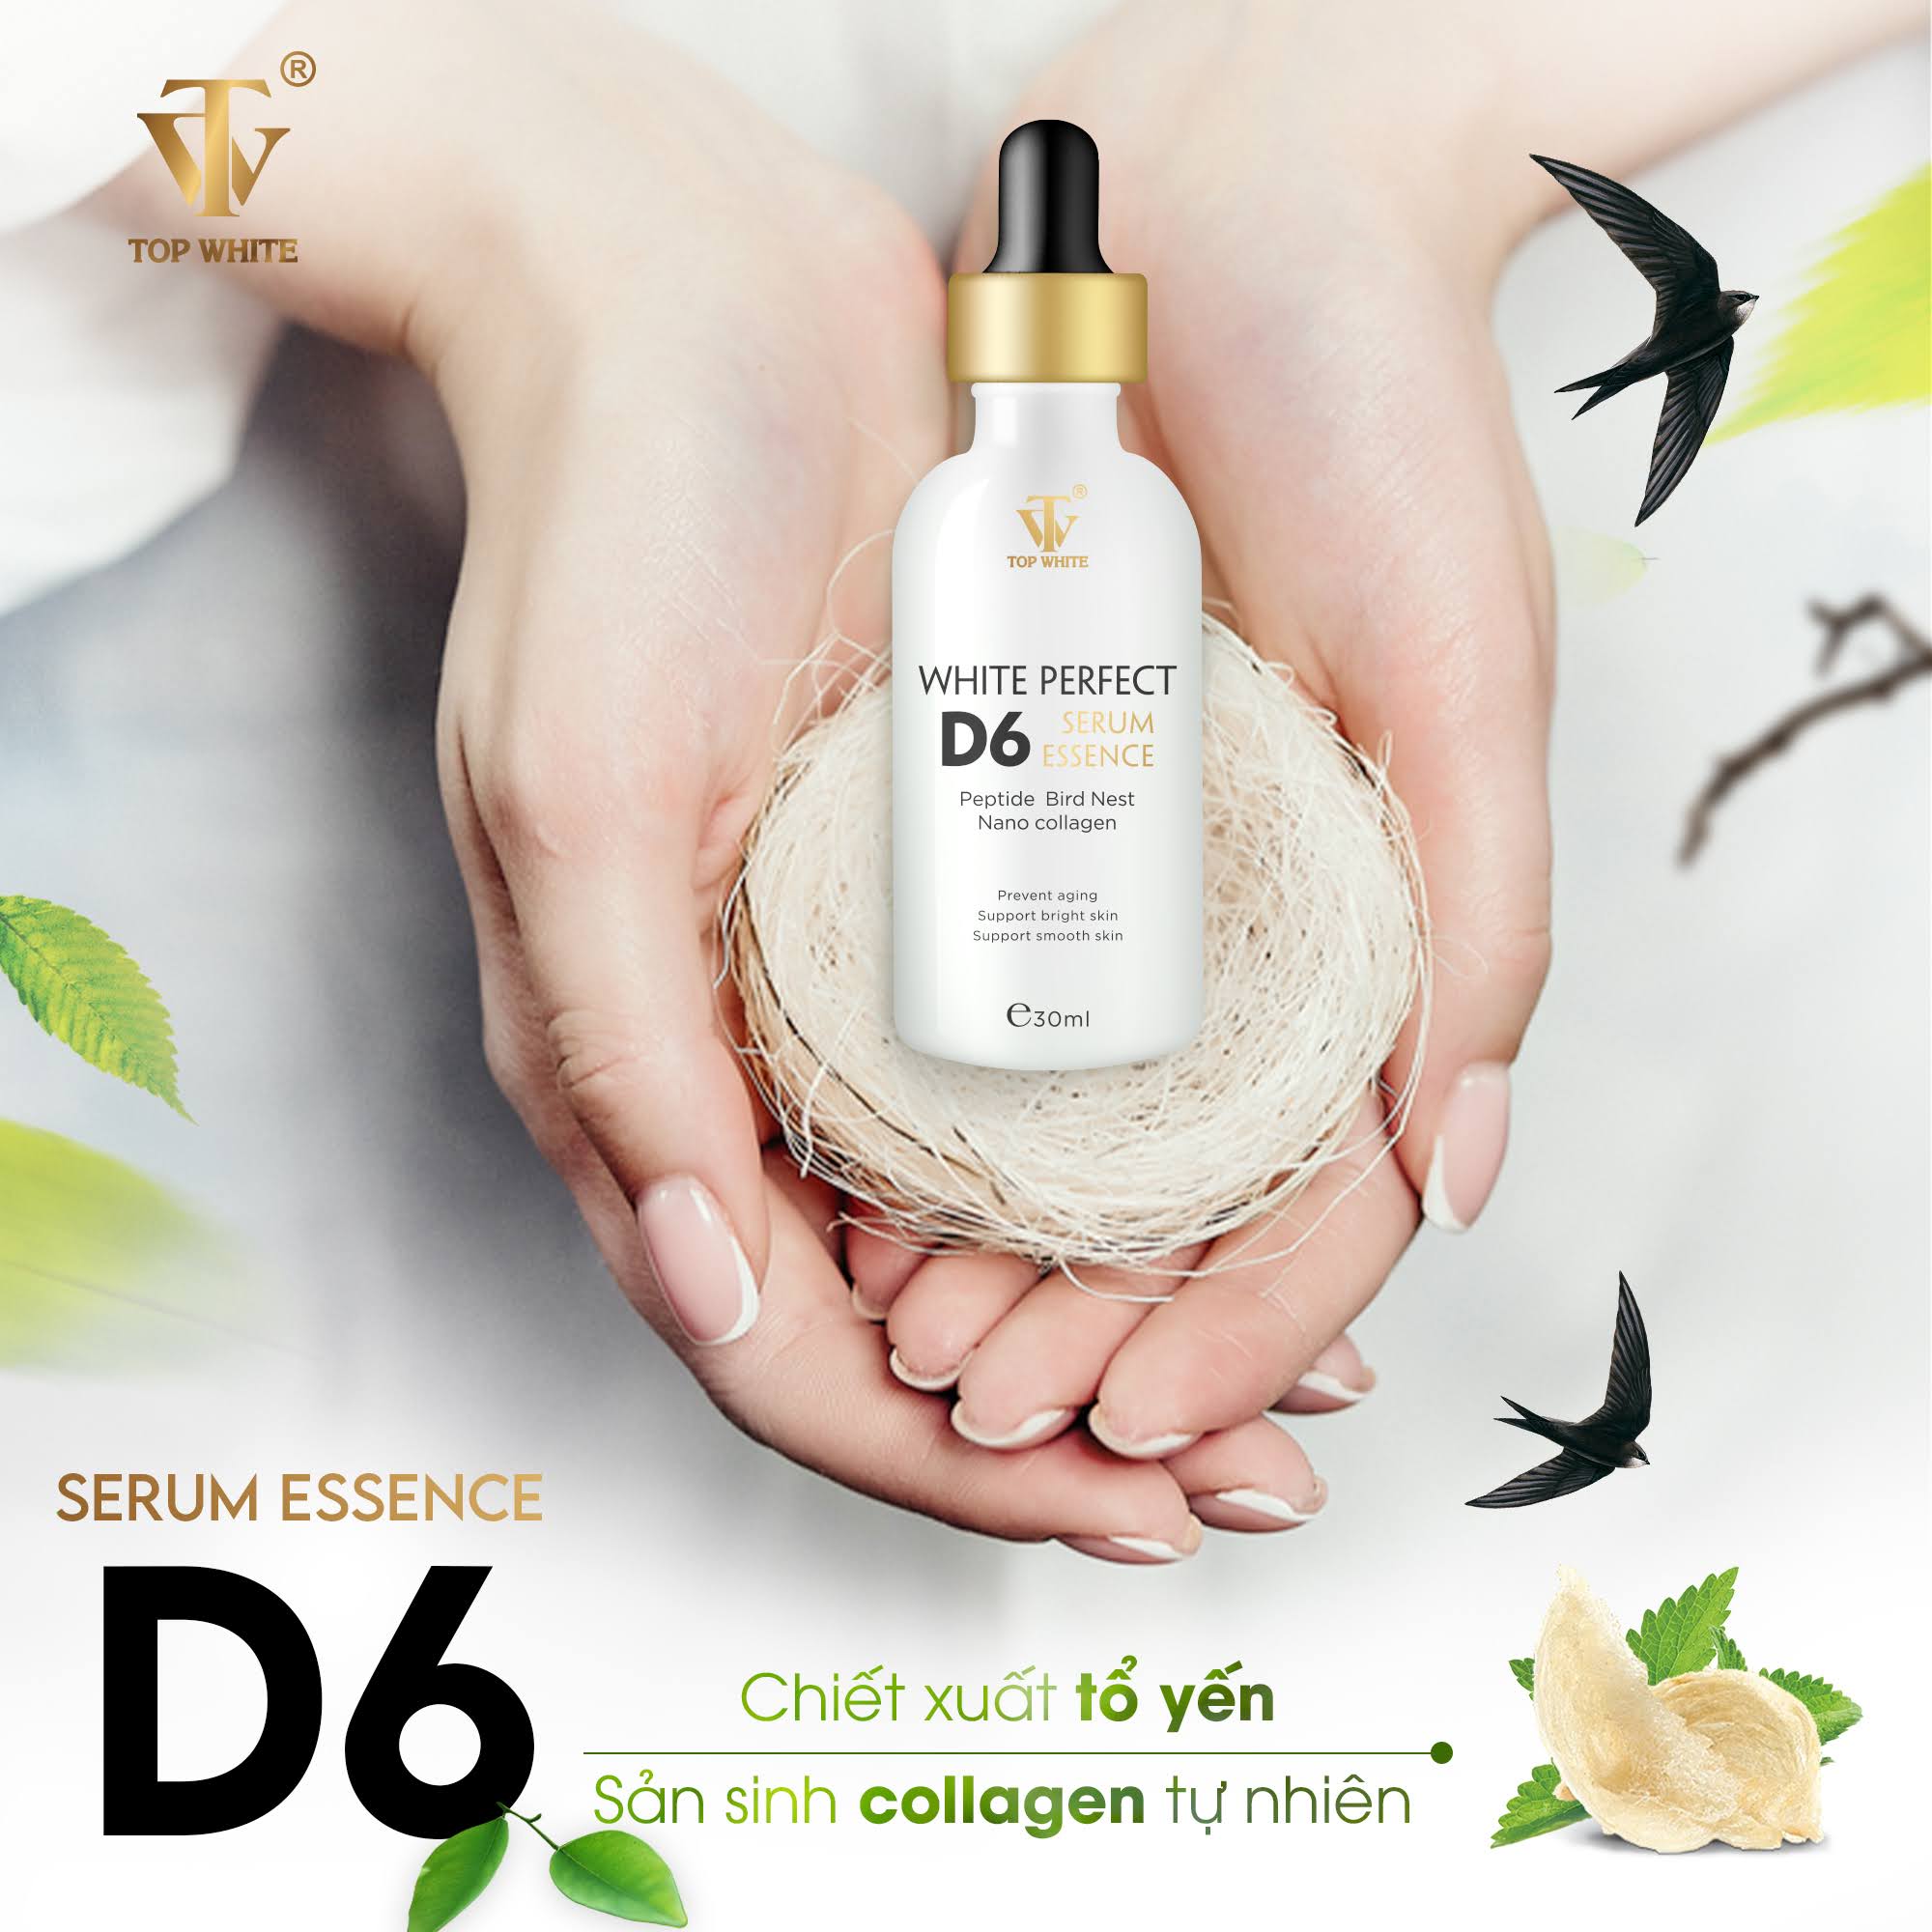 Topwhite White Perfect D6 Serum Essence tinh chất tạo sự căng bóng trẻ hóa làn da